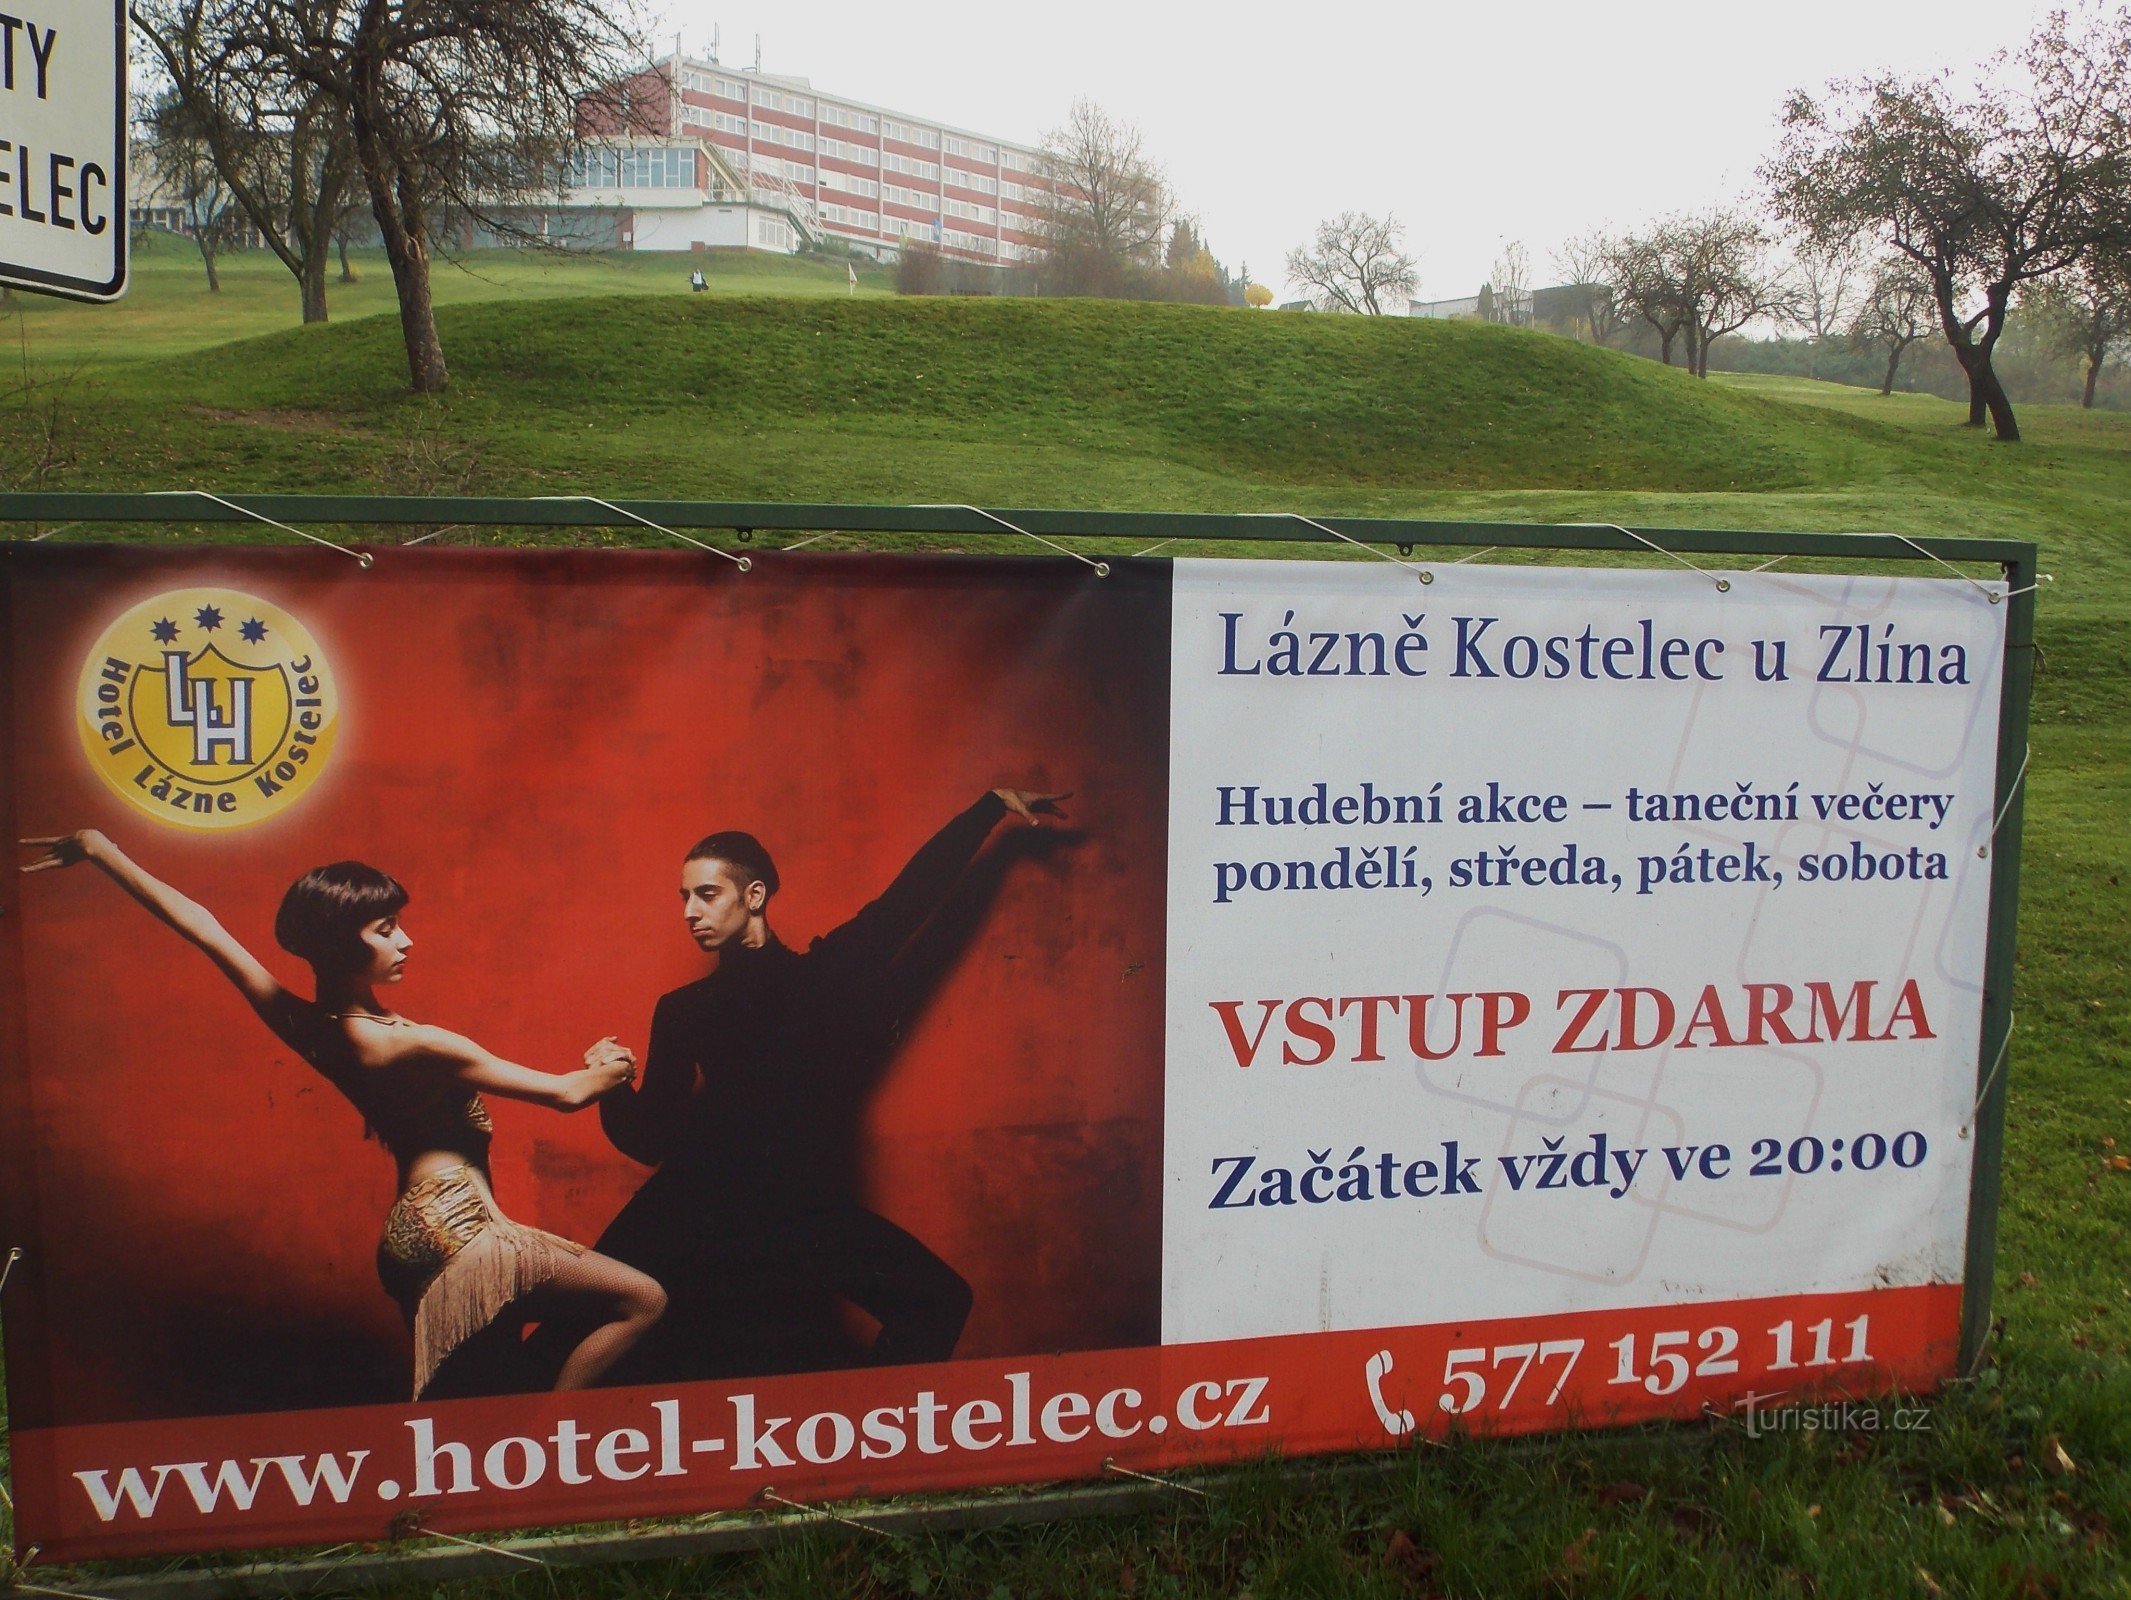 Ga voor gezondheid en ontspanning naar de Koselec-spa in de buurt van Zlín